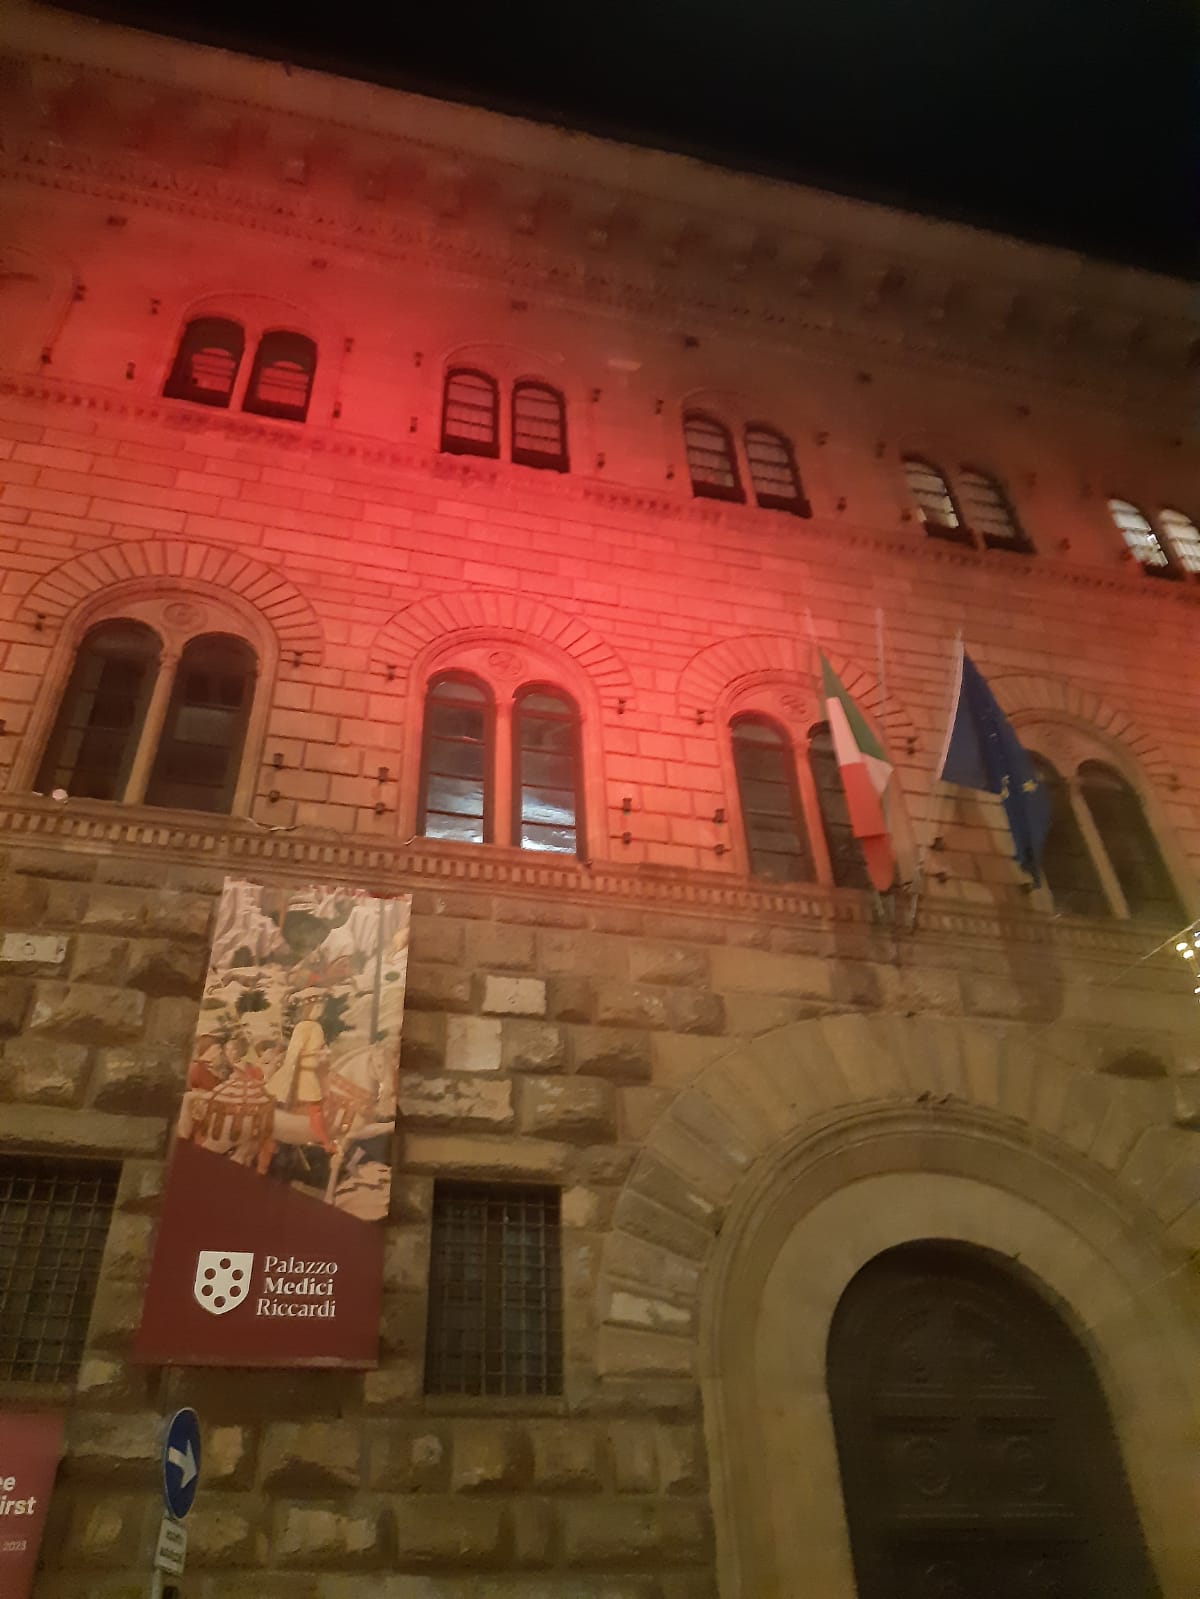 La facciata di Palazzo Medici Riccardi illuminata di bianco e rosso contro la pena di morte